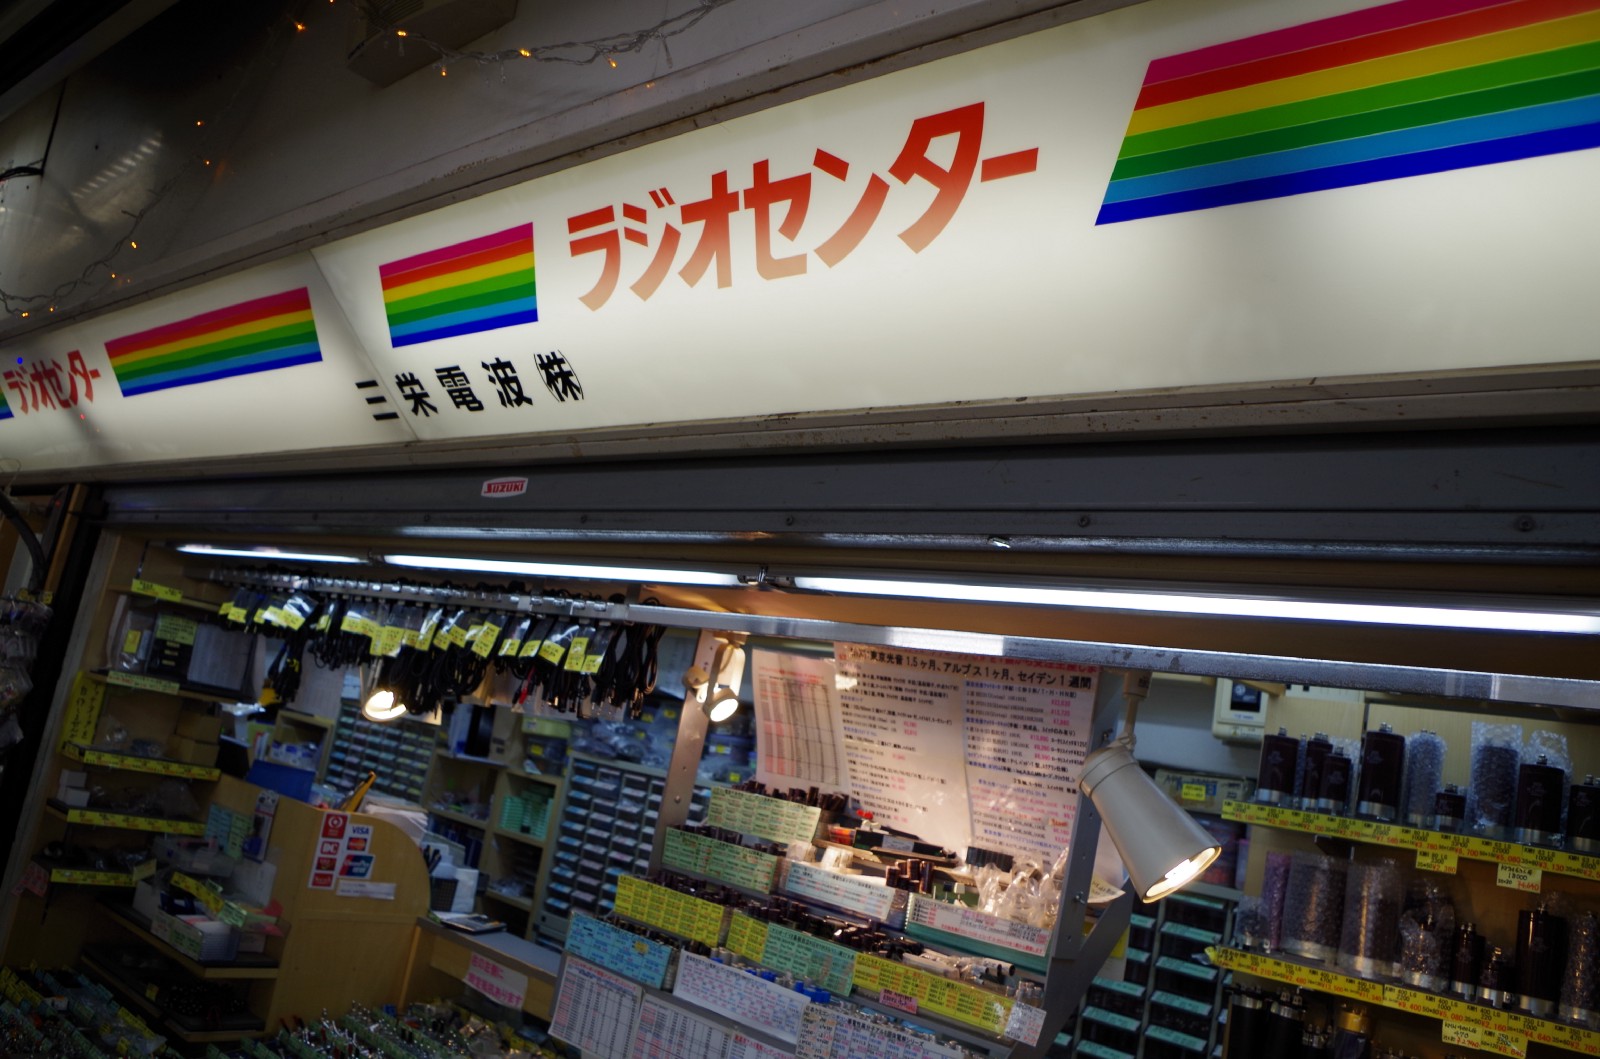 The shops at Radio Center in Akihabara